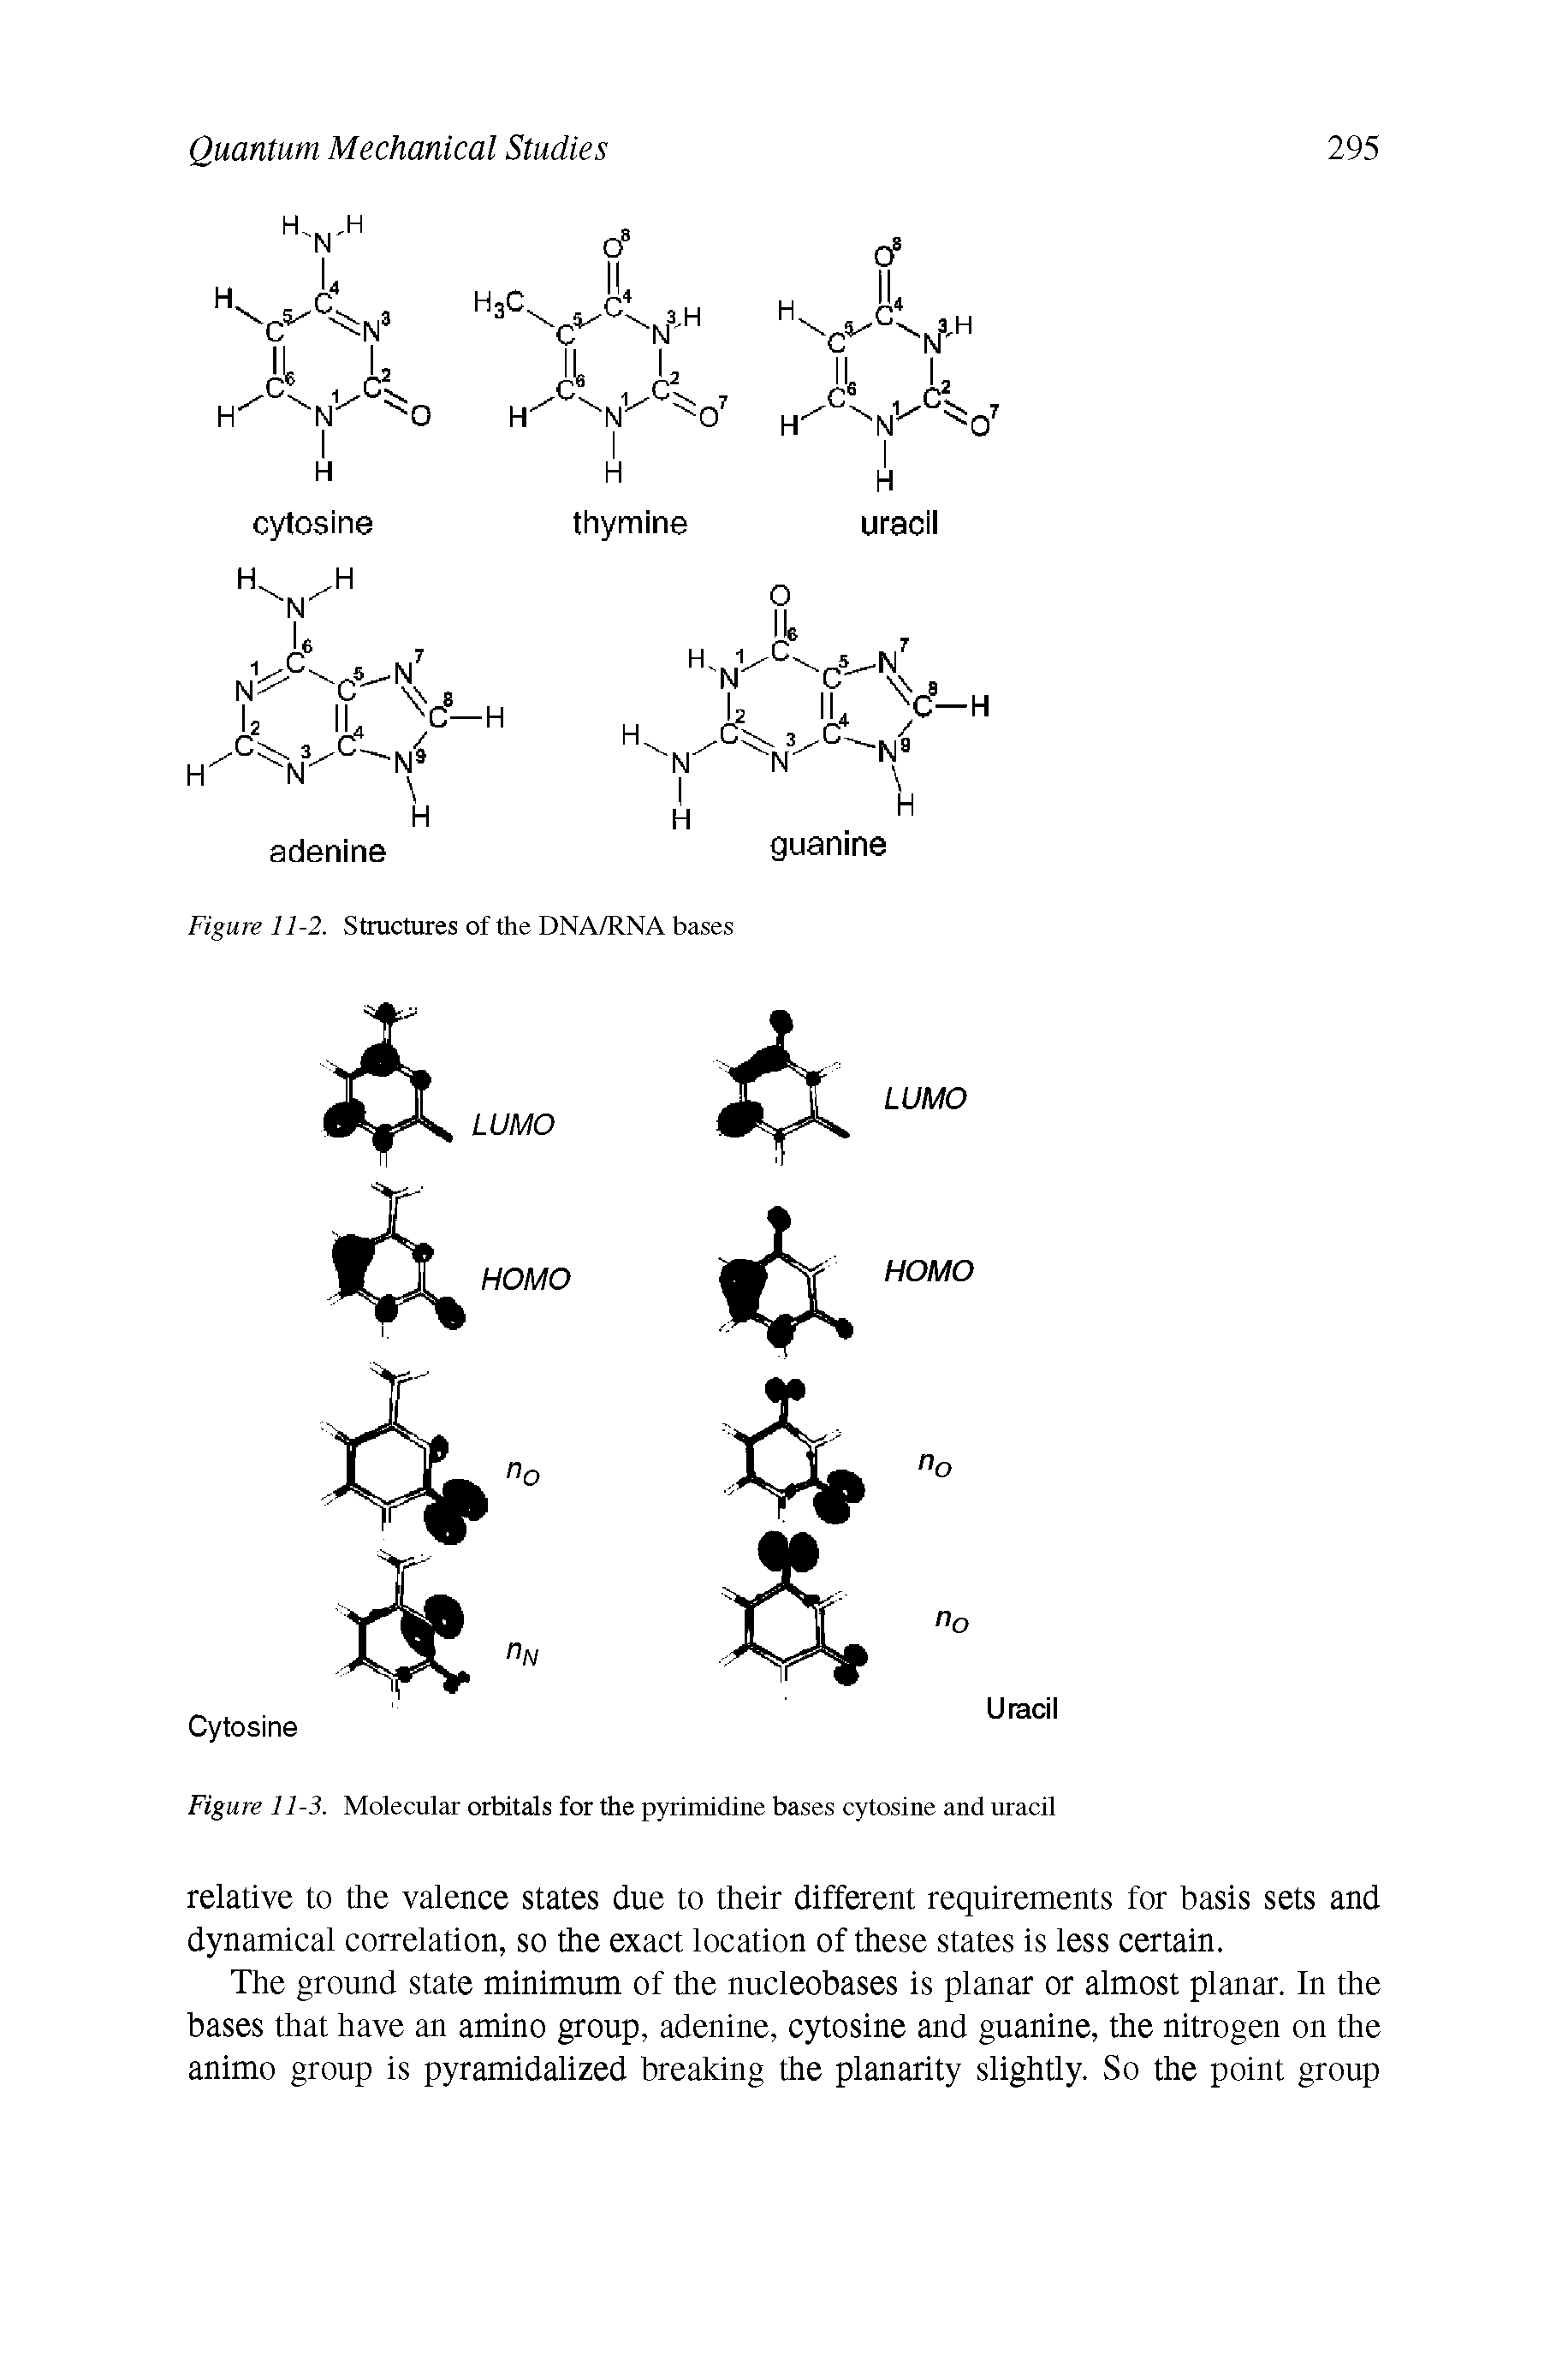 Figure 11-3. Molecular orbitals for the pyrimidine bases cytosine and uracil...